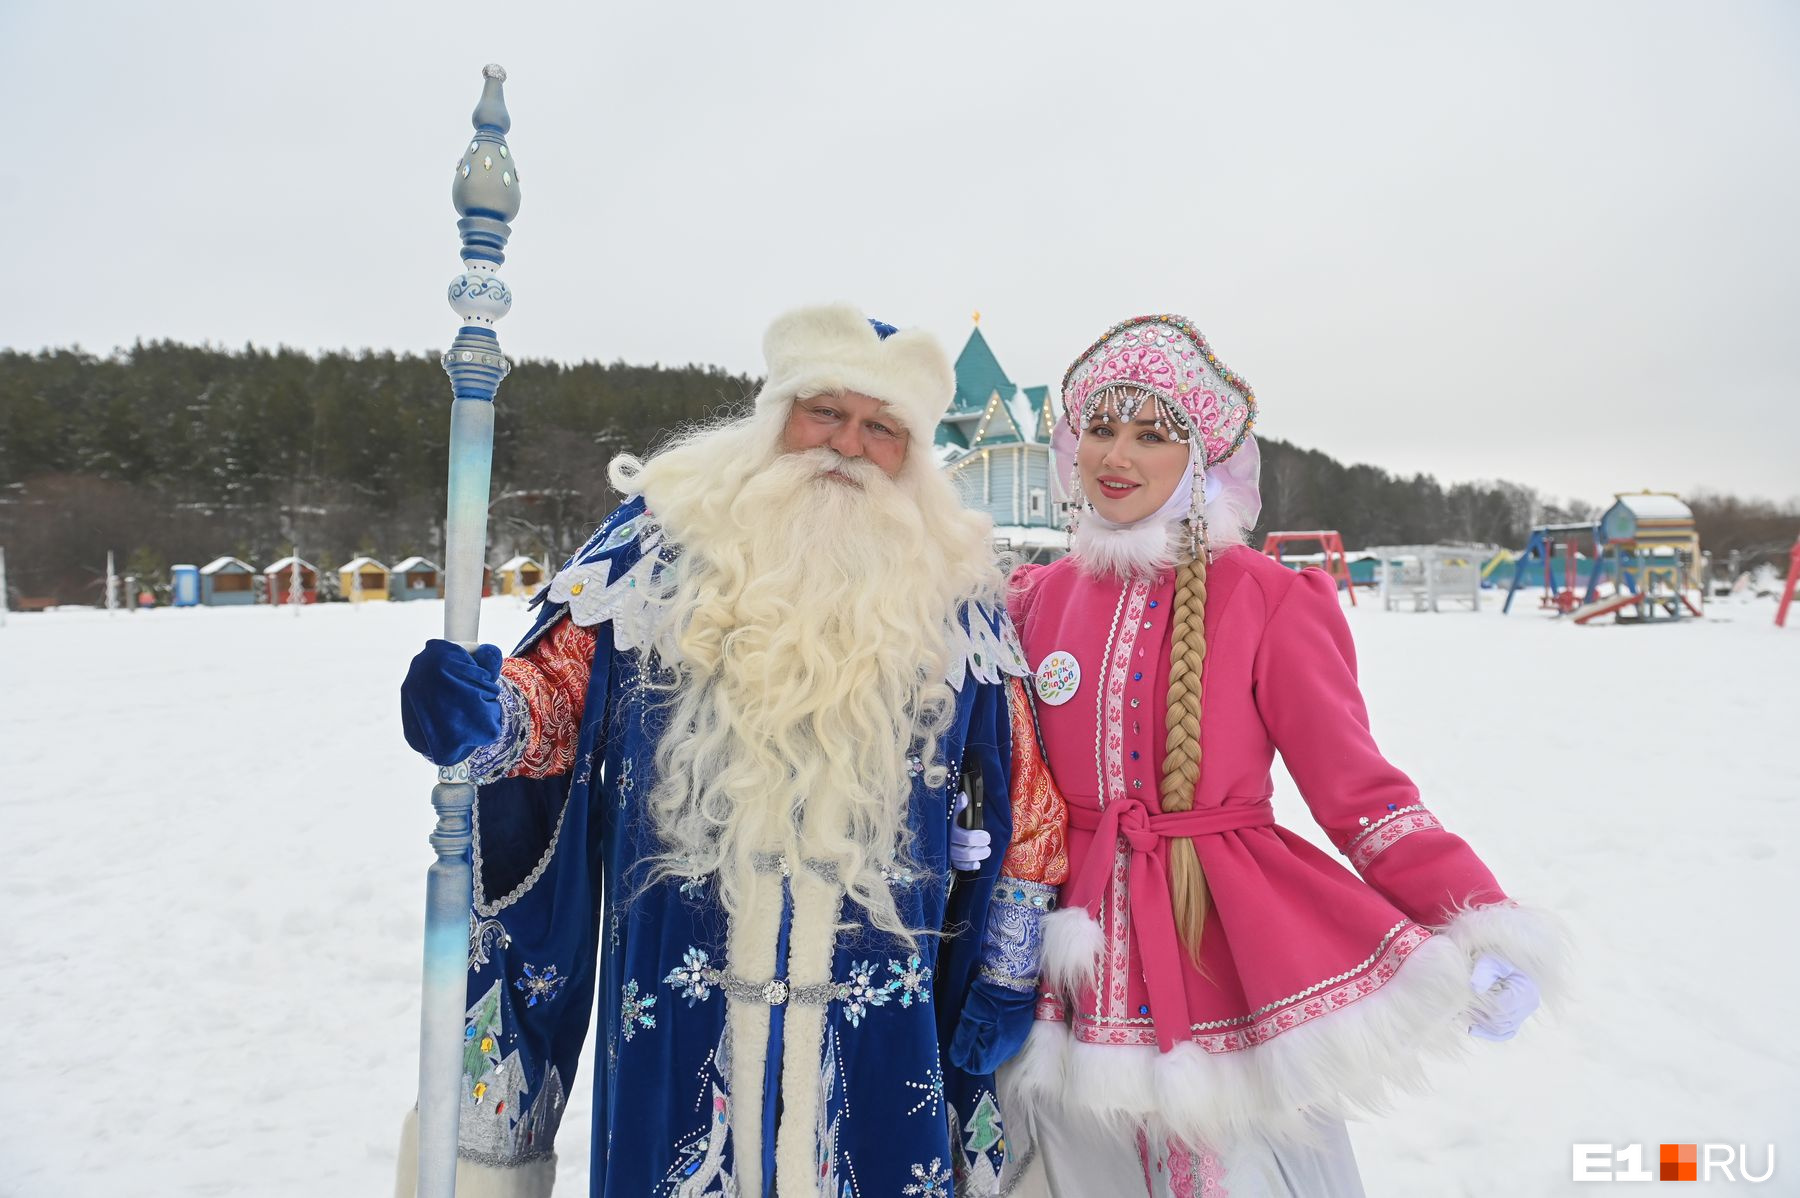 Уральские снегурочки устроили танцы вокруг Деда Мороза, а потом разделись и отправились в сауну